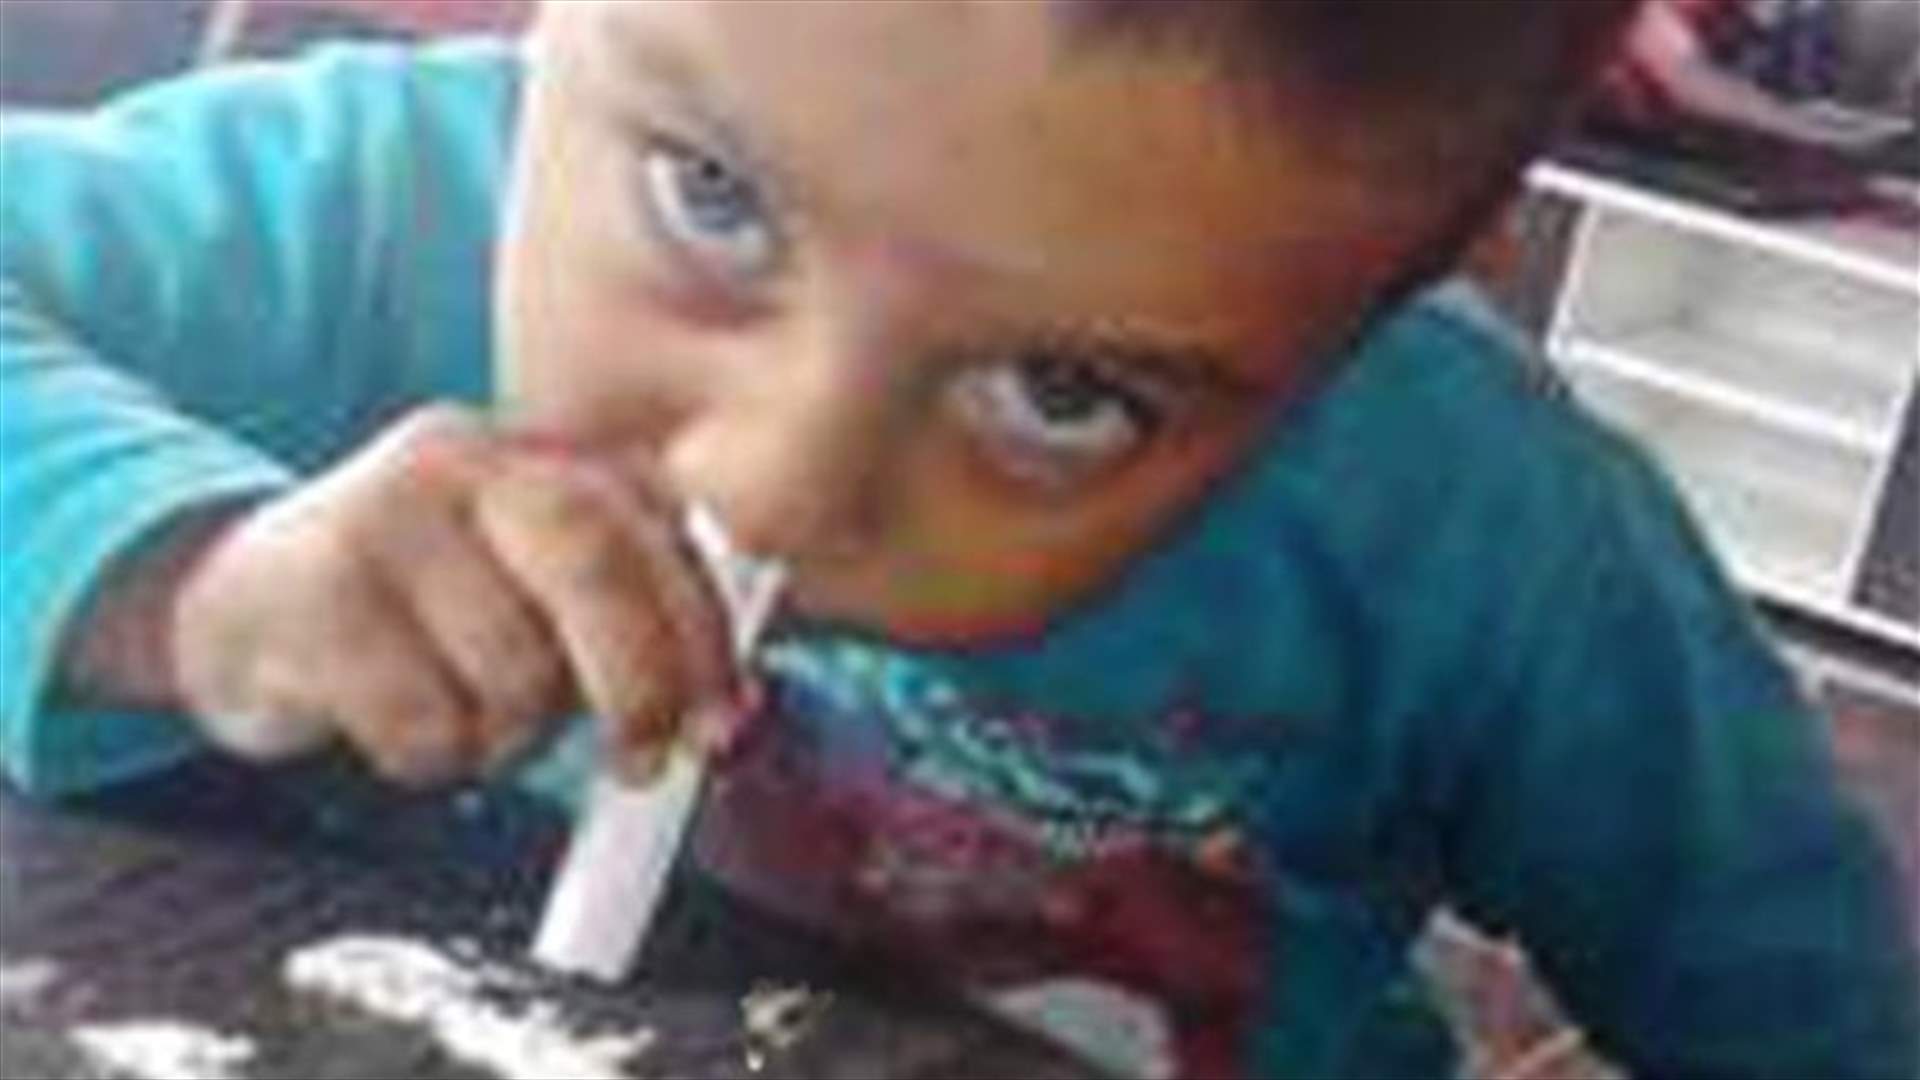 بالصورة: طفل في الثالثة من العمر يتعاطى الكوكايين بحضور أهله!